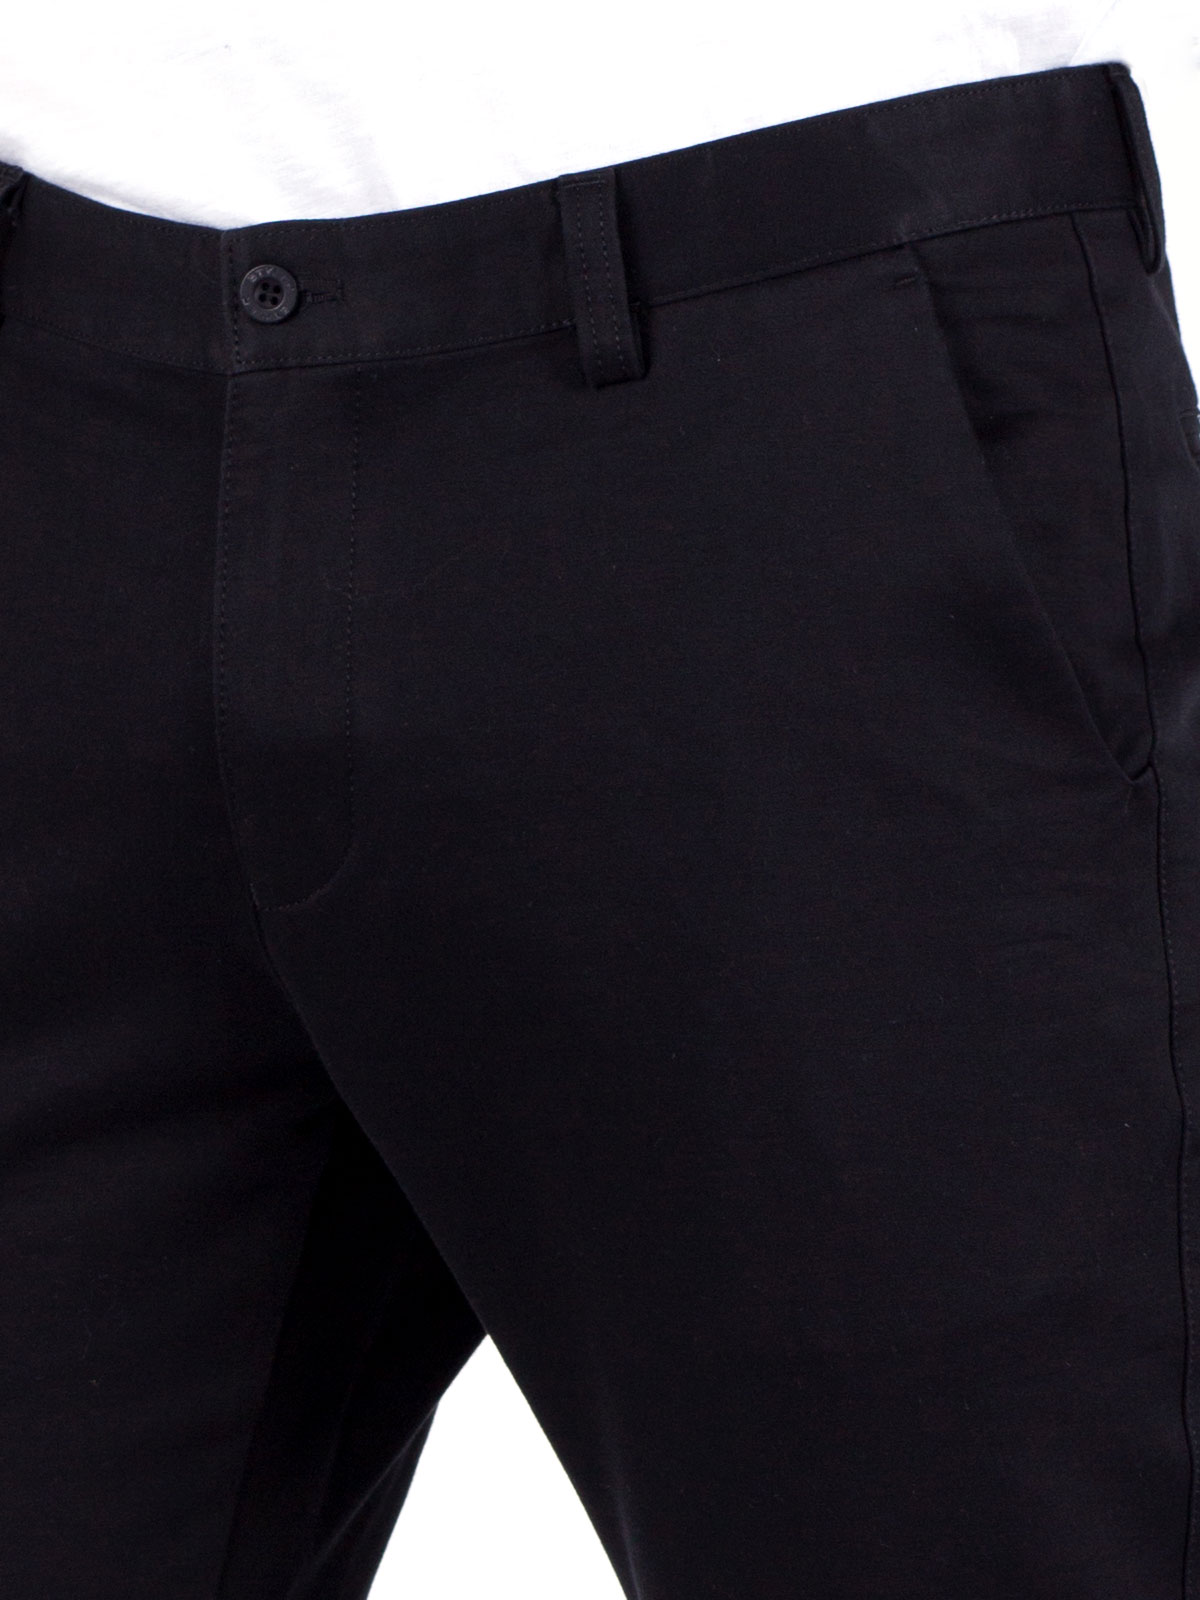 Черен панталон от памук с еластан - 60208 20.00 лв img3